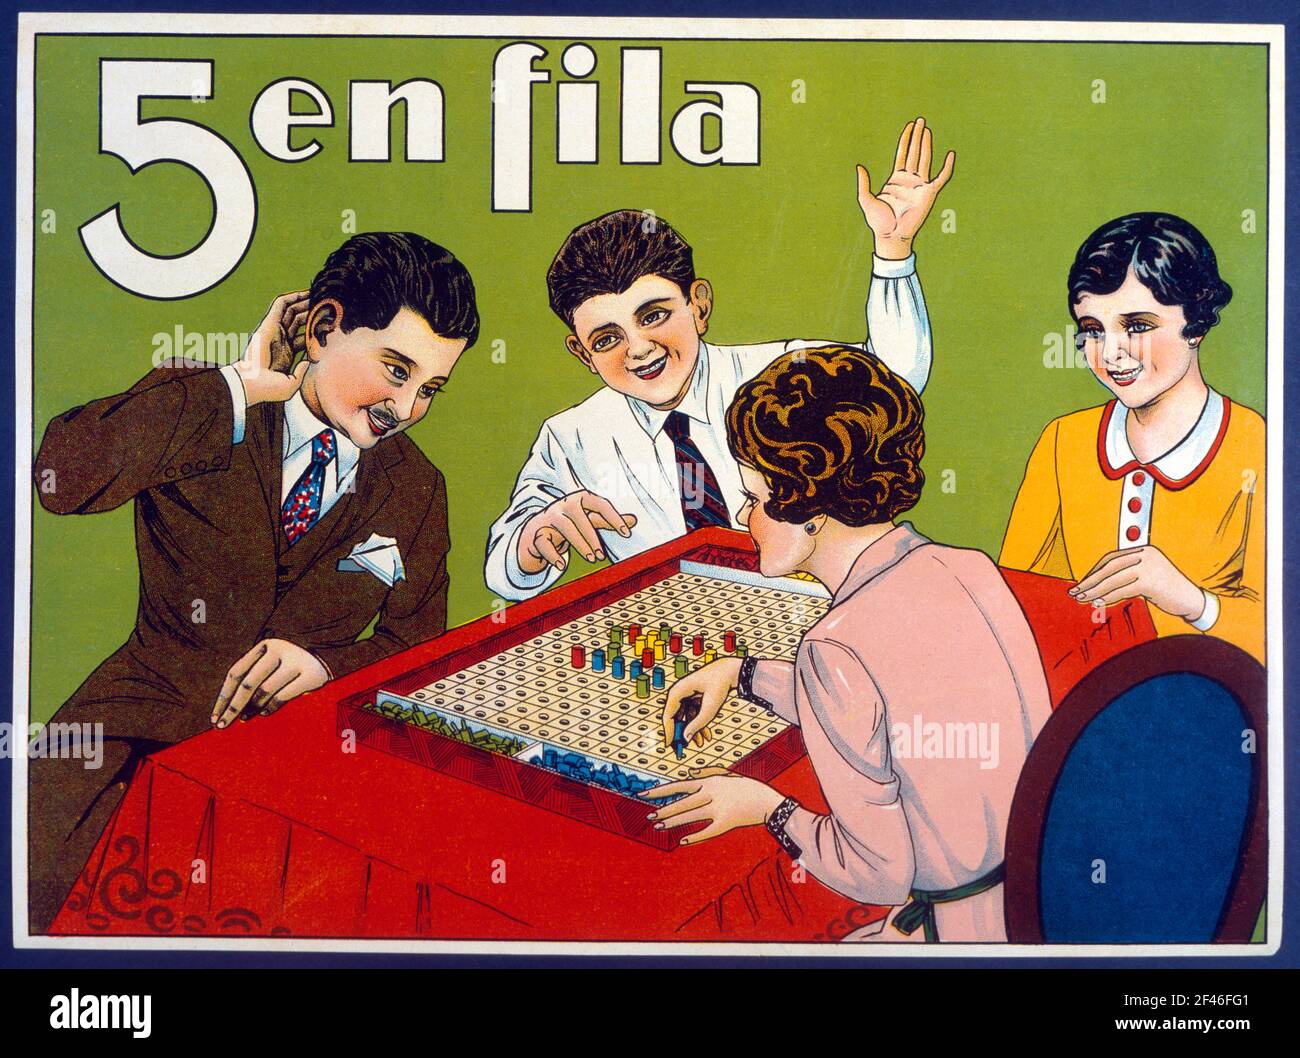 Juguetes de cartón y madera. Caja del juego 5 en Fila, fabricado por Juguetes Borrás, de Mataró. Año 1935. Stock Photo